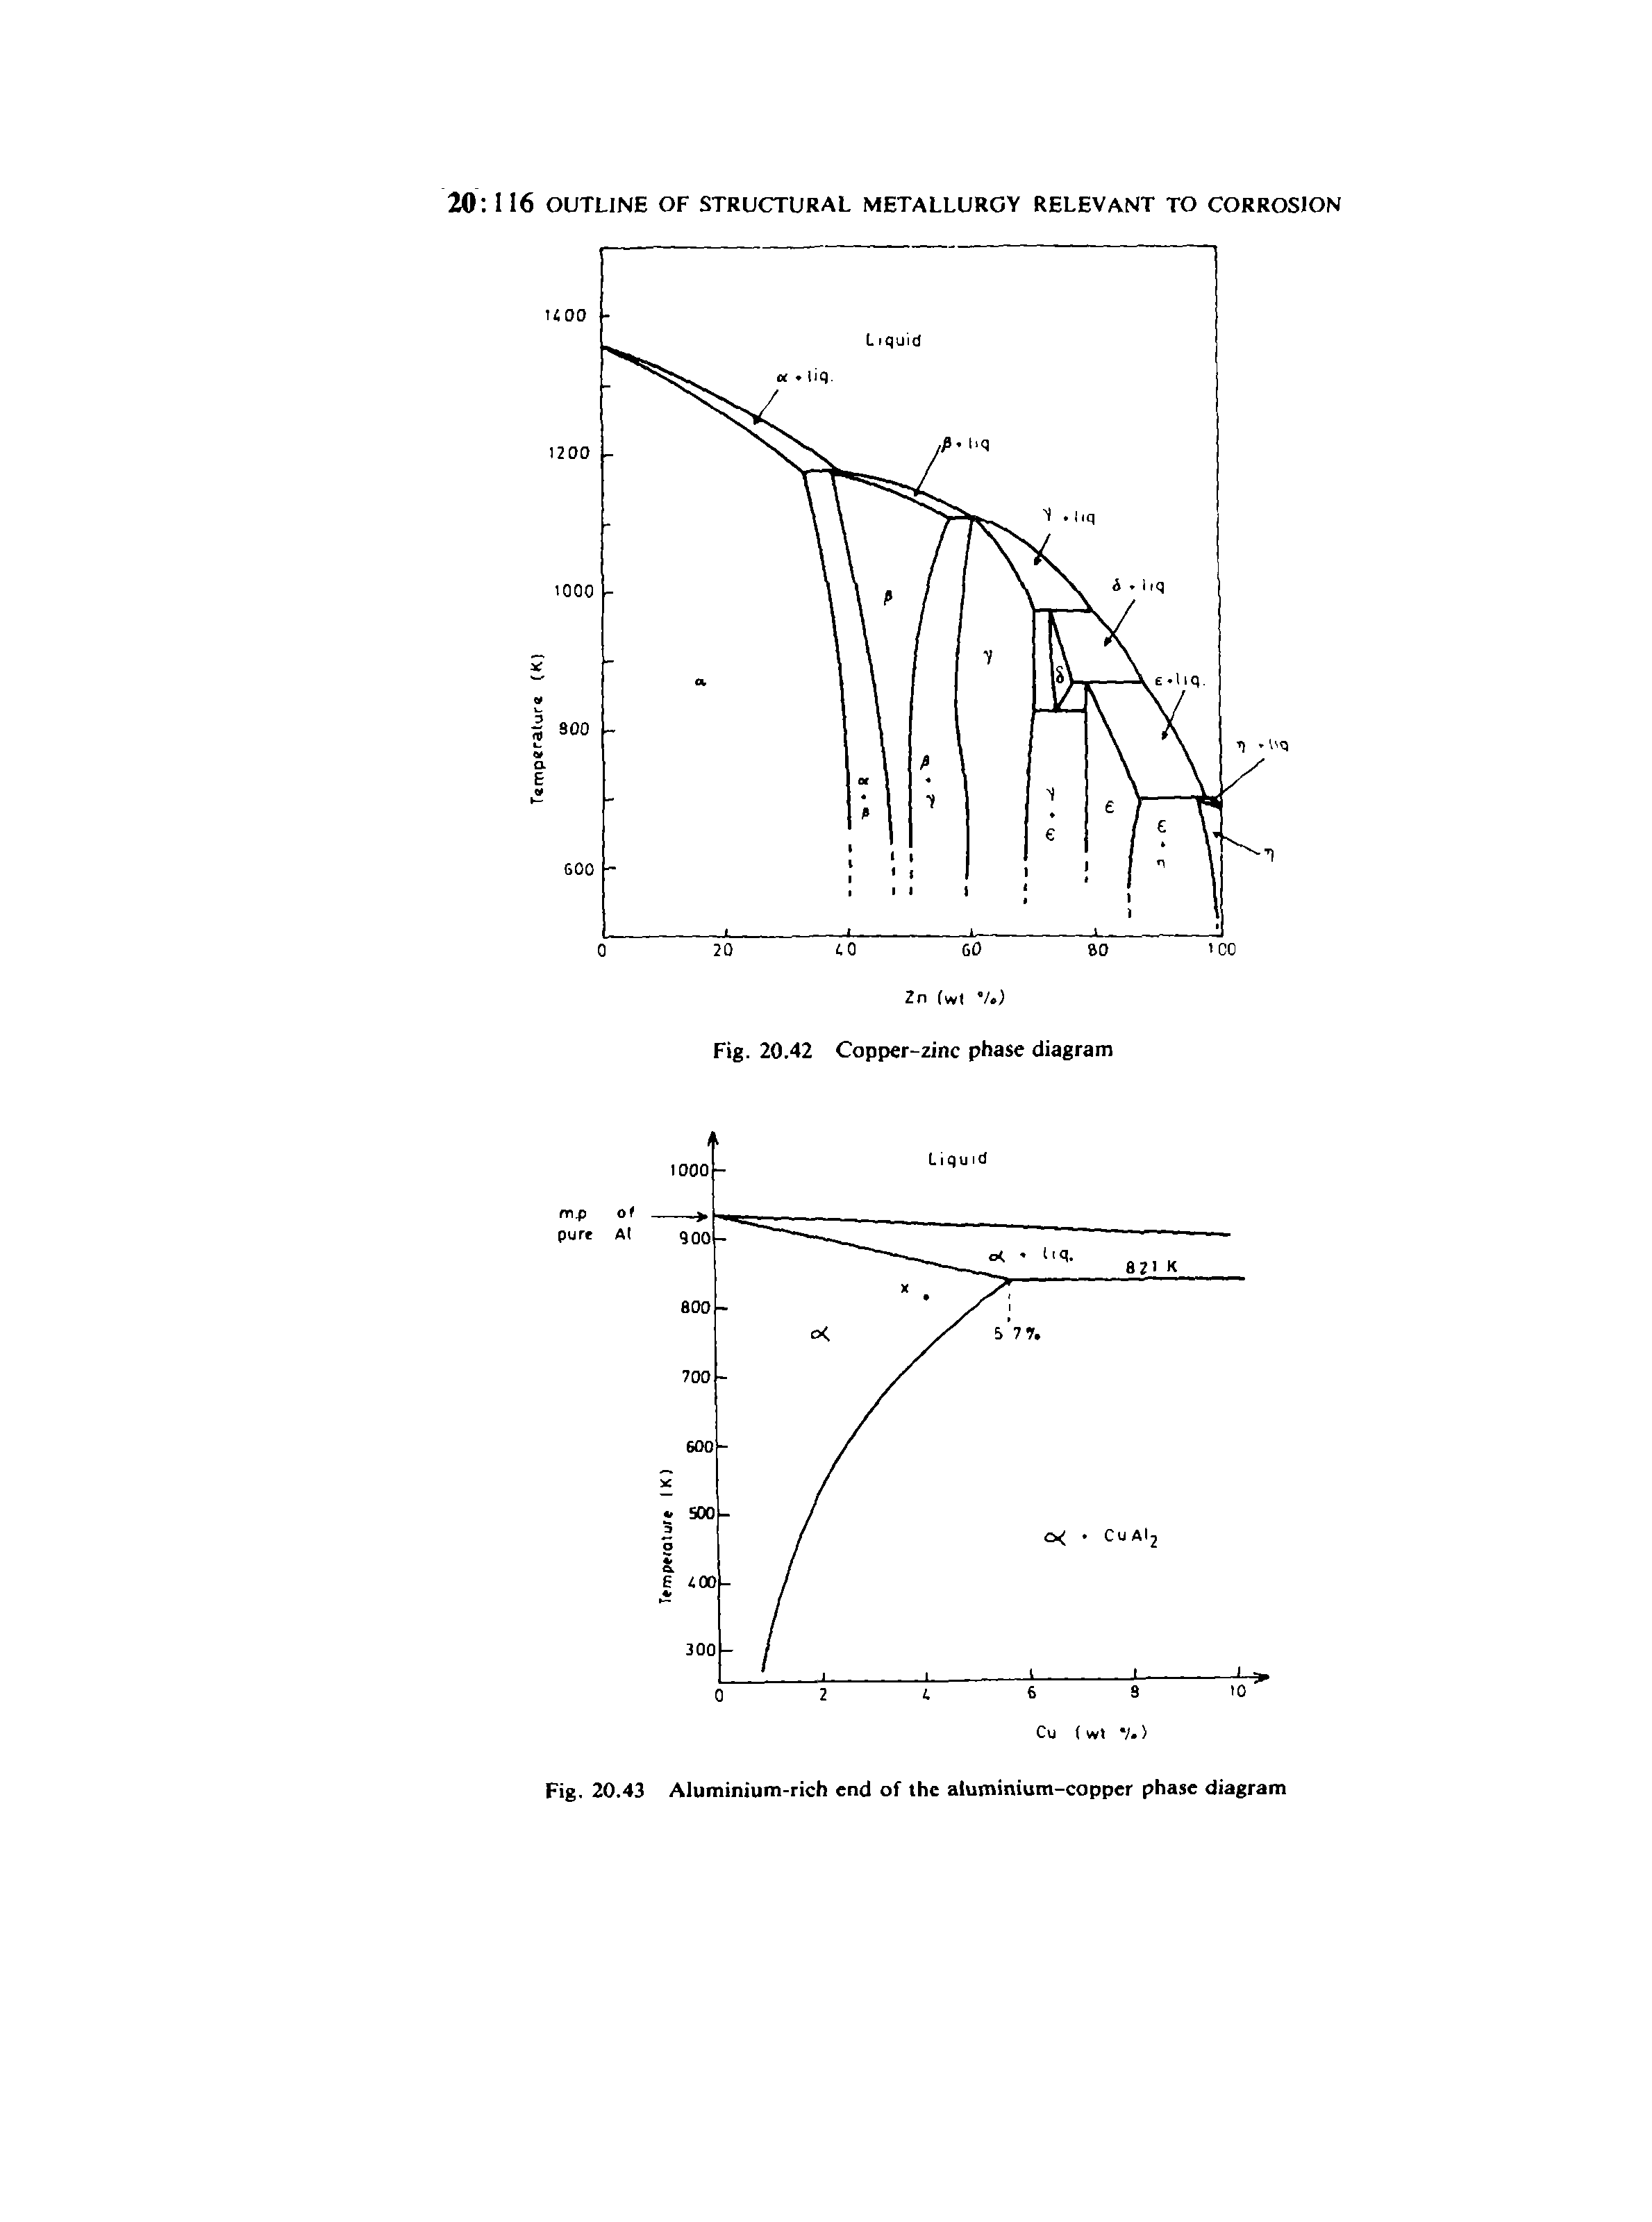 Fig. 20.43 Aluminium-rich end of the aluminium-copper phase diagram...